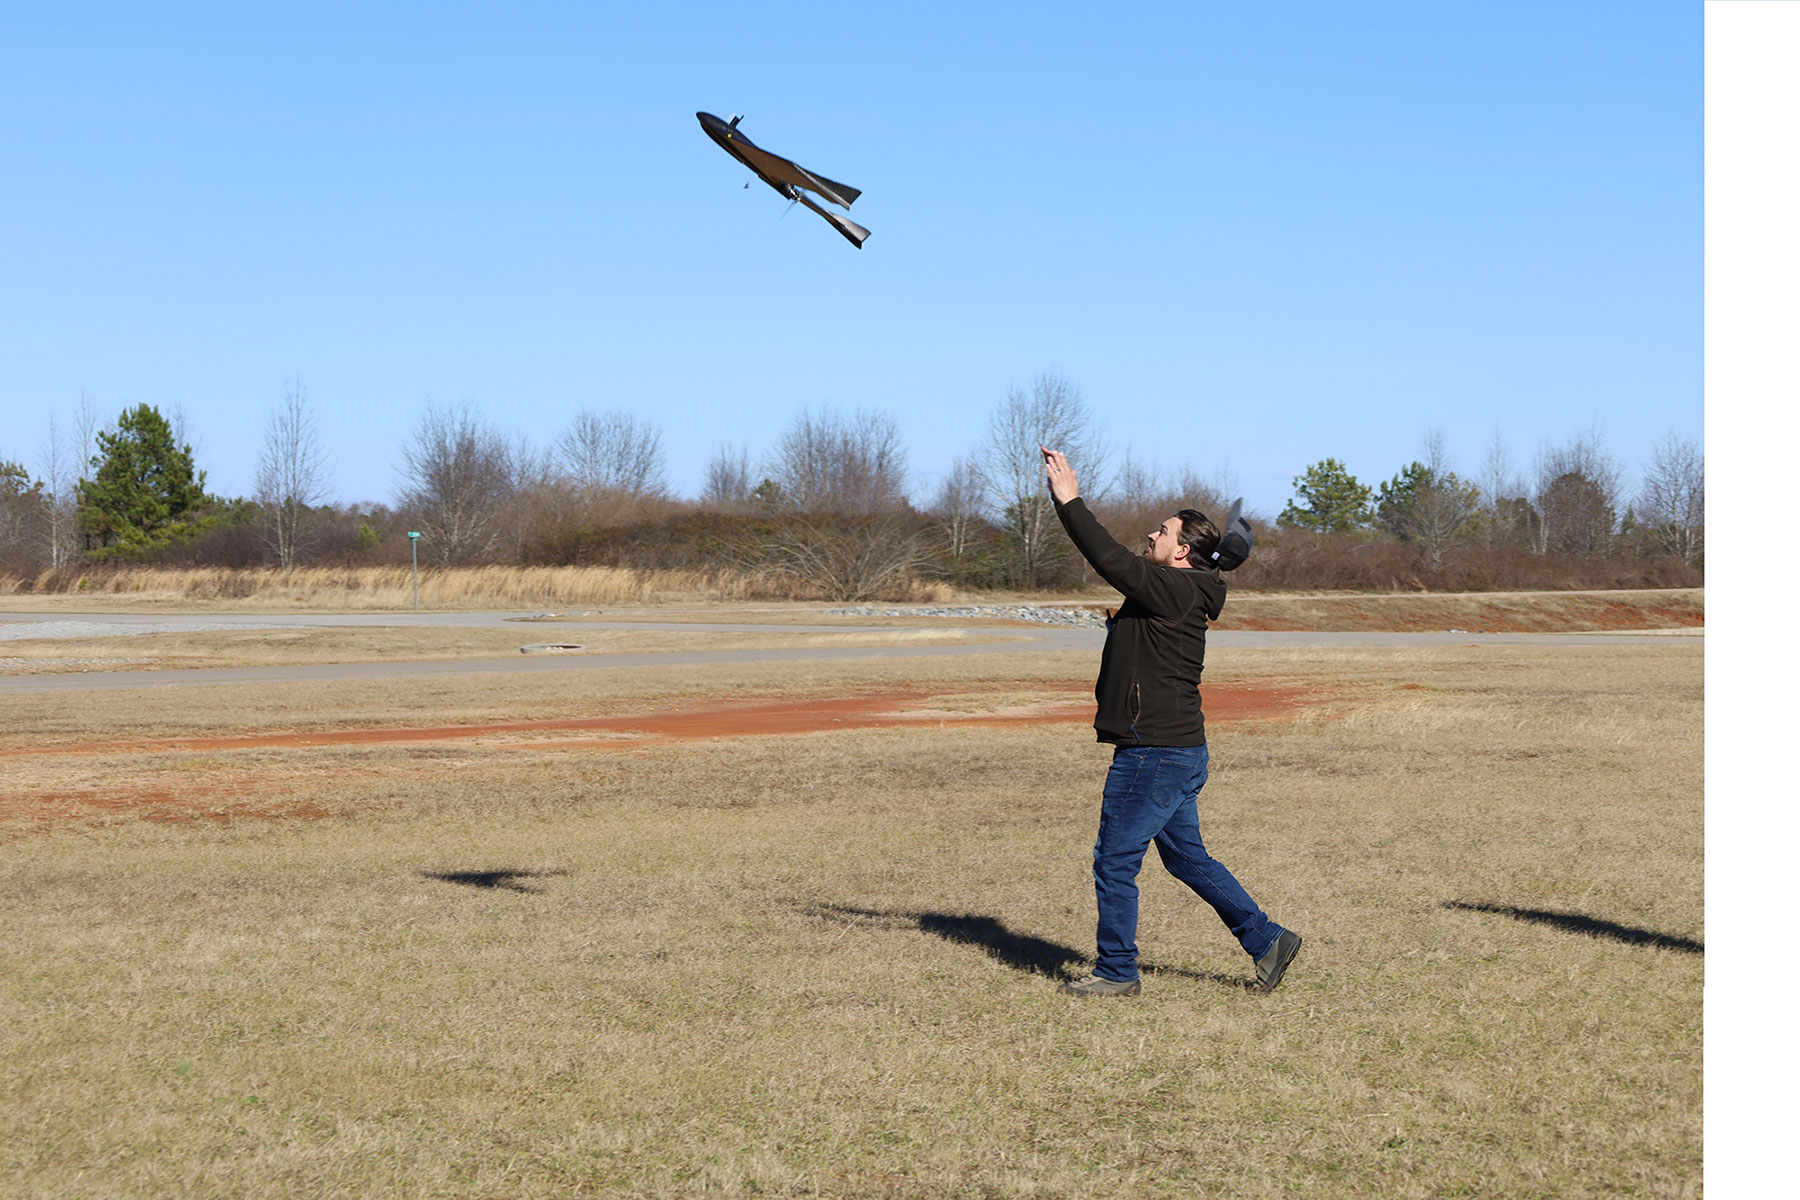 Artemis Launch